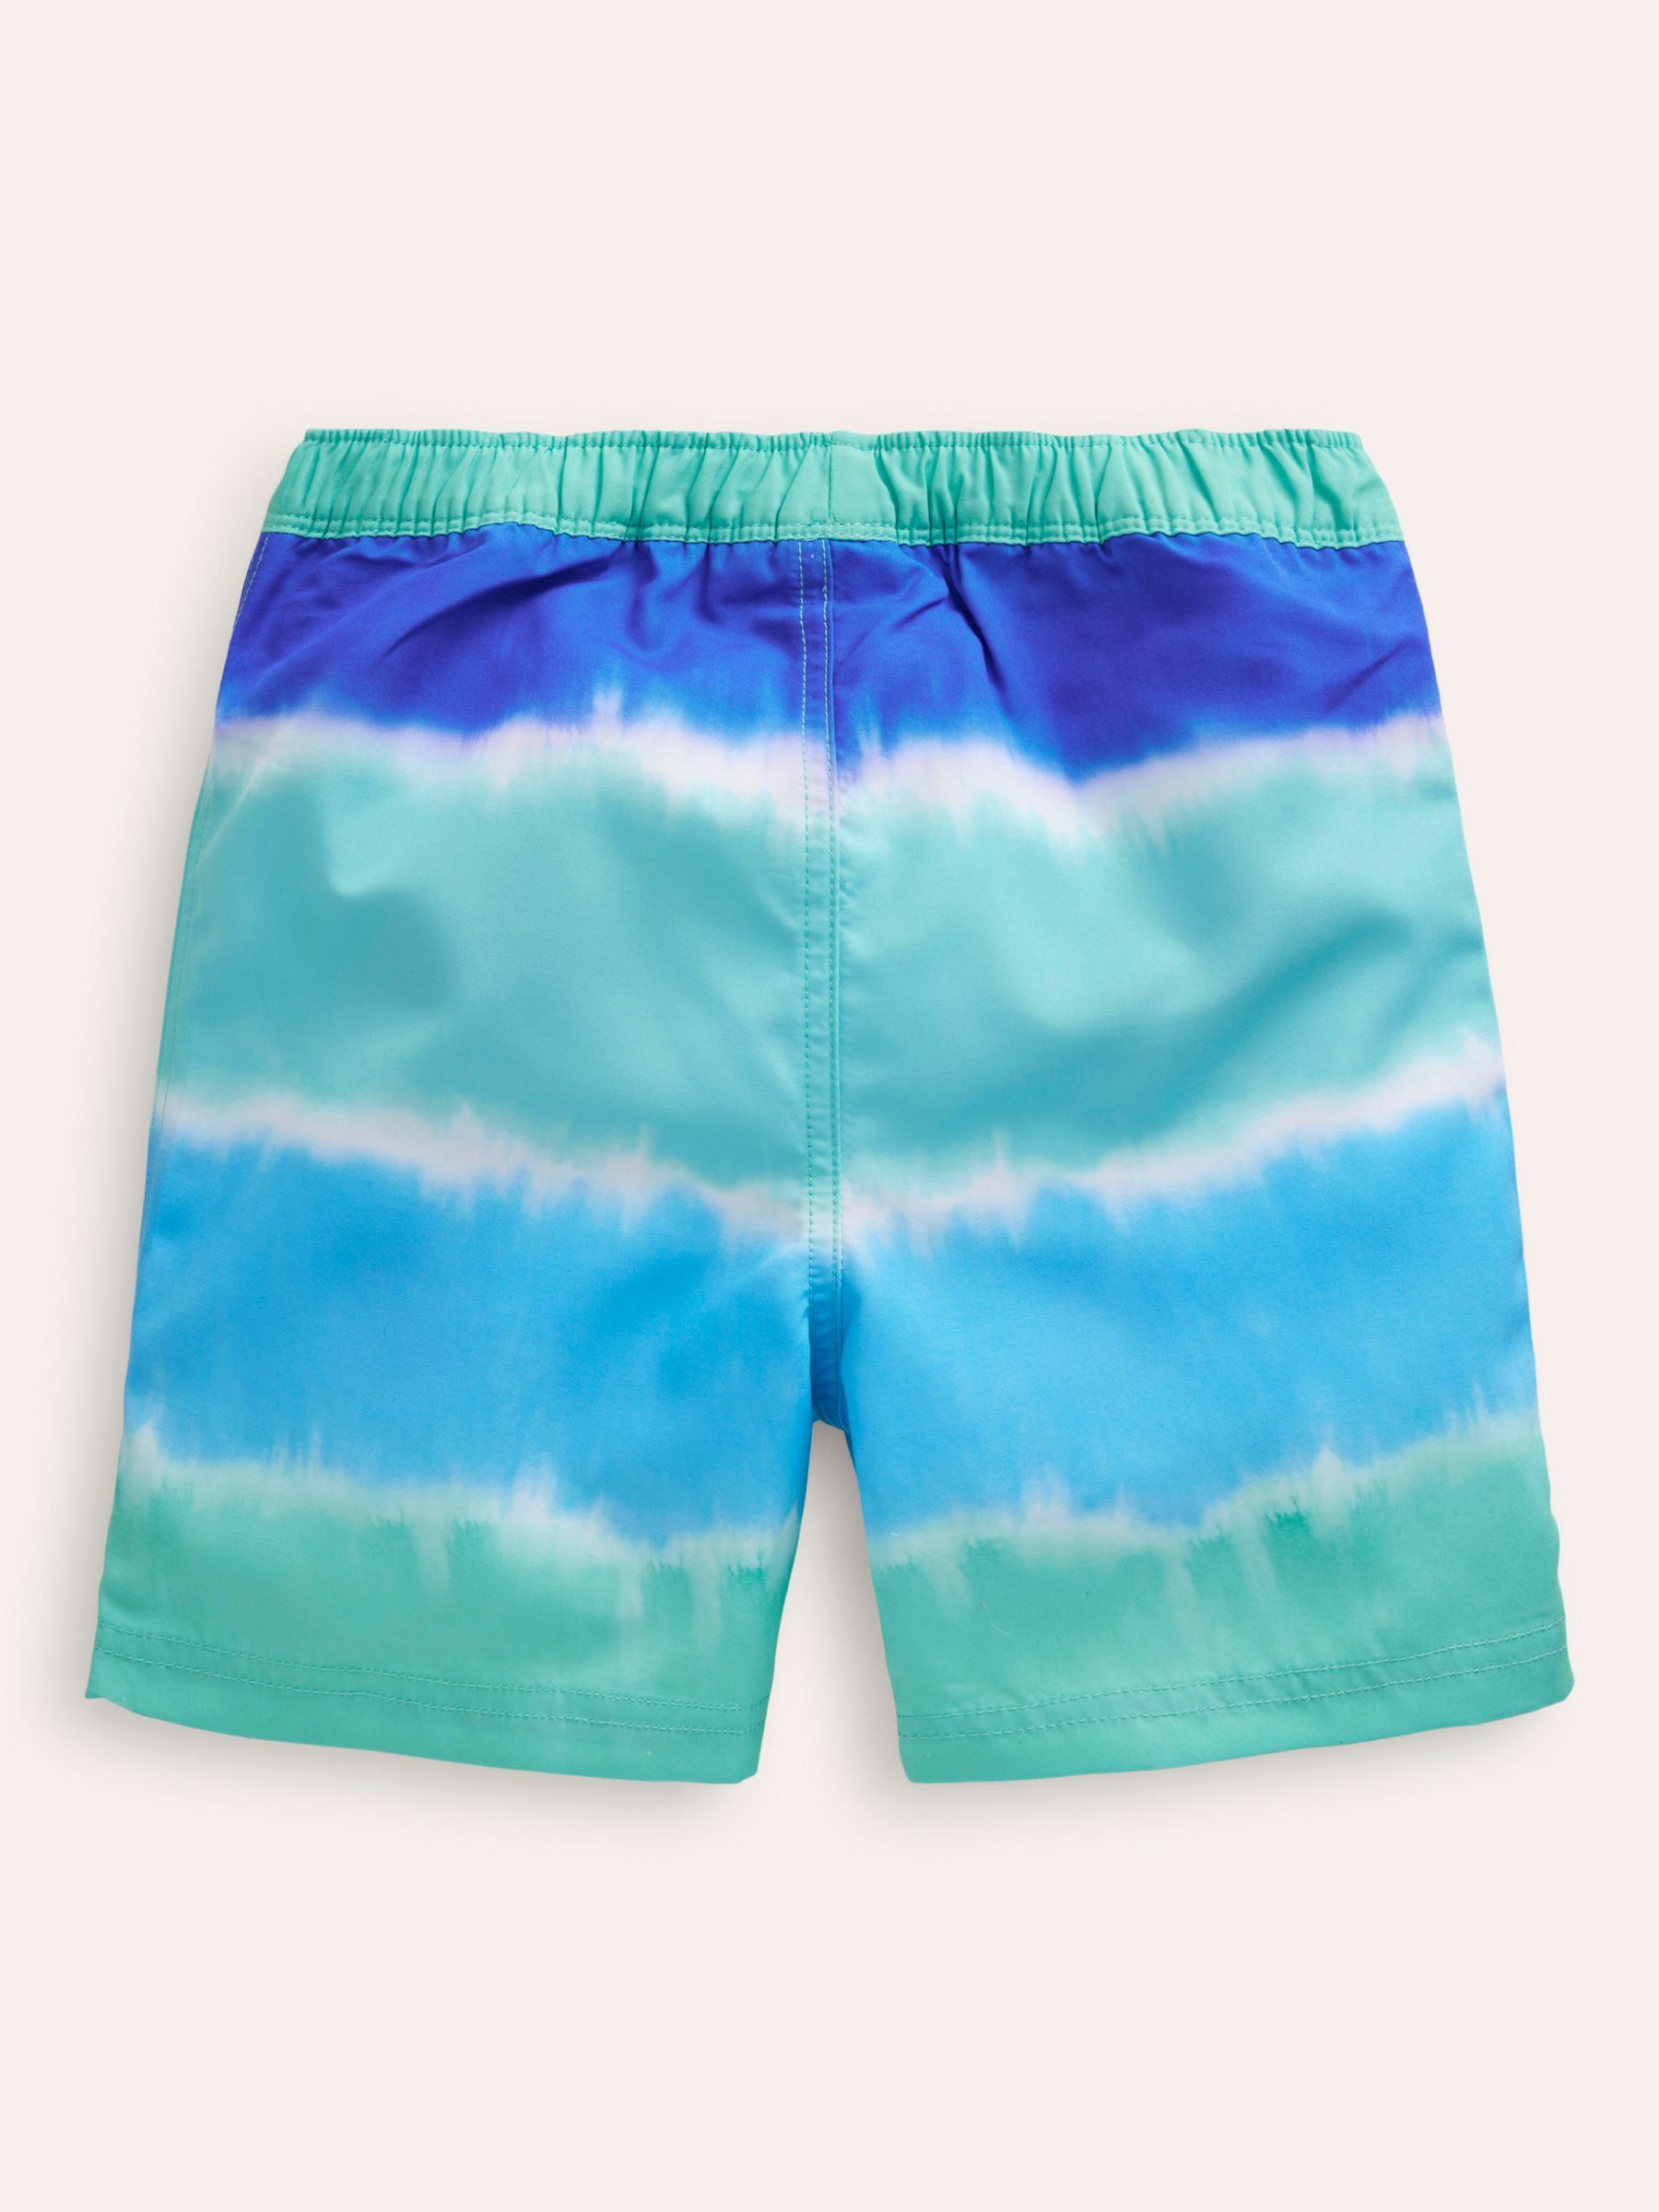 Mini Boden Kids' Tie Dye Swim Shorts, Blue/Multi, 2-3 years